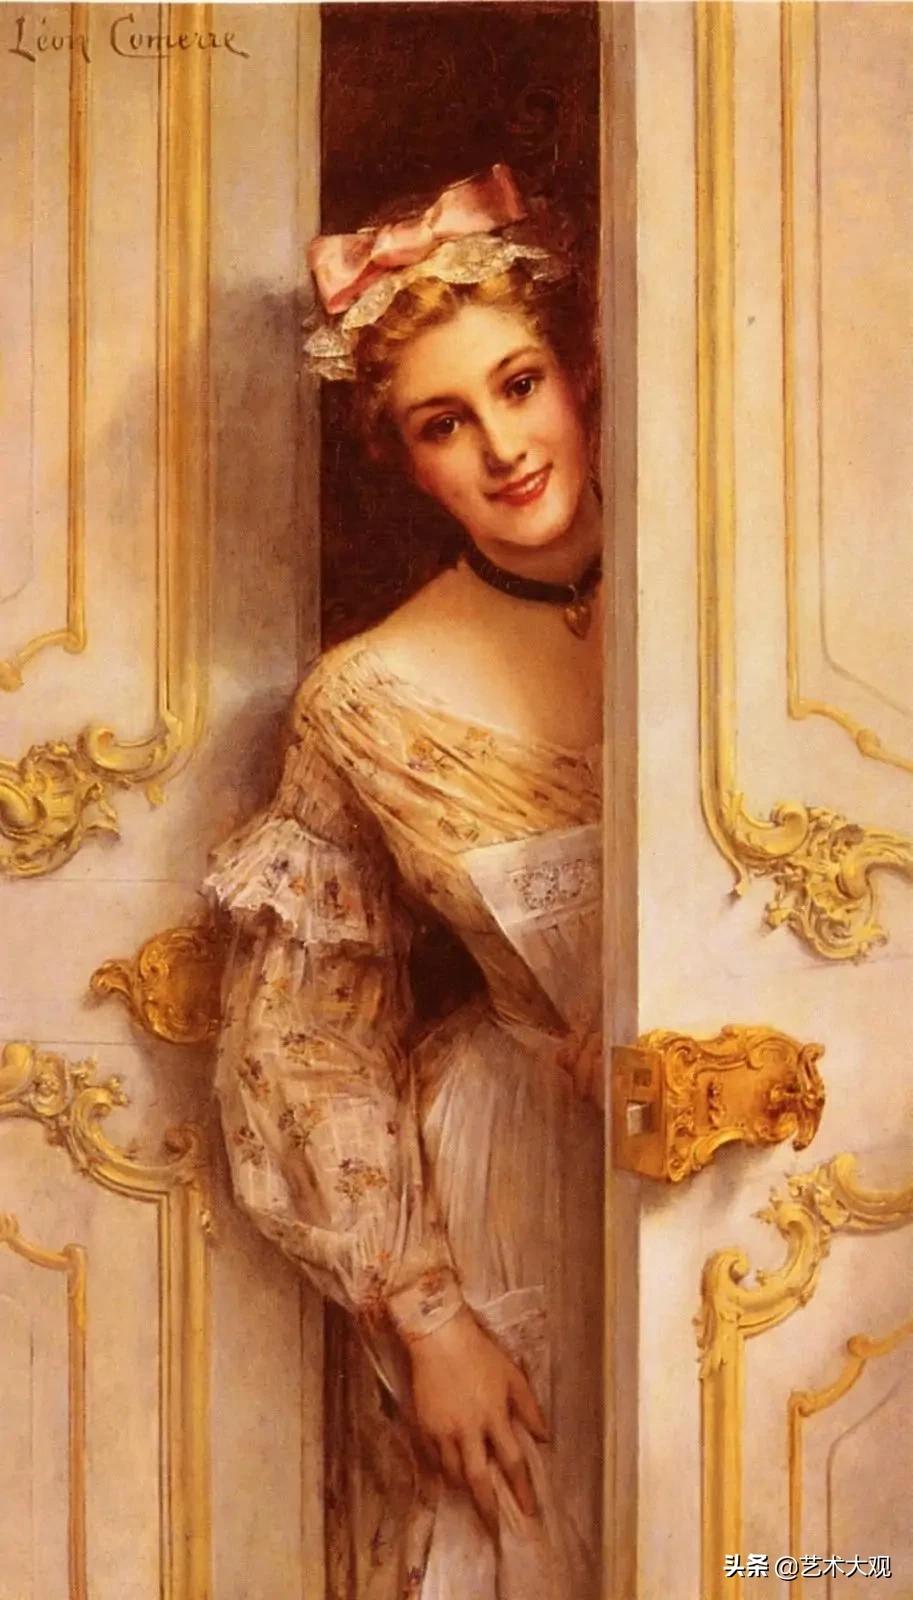 绝世佳人 | 十九世纪法国学院派画家莱昂人物油画作品欣赏